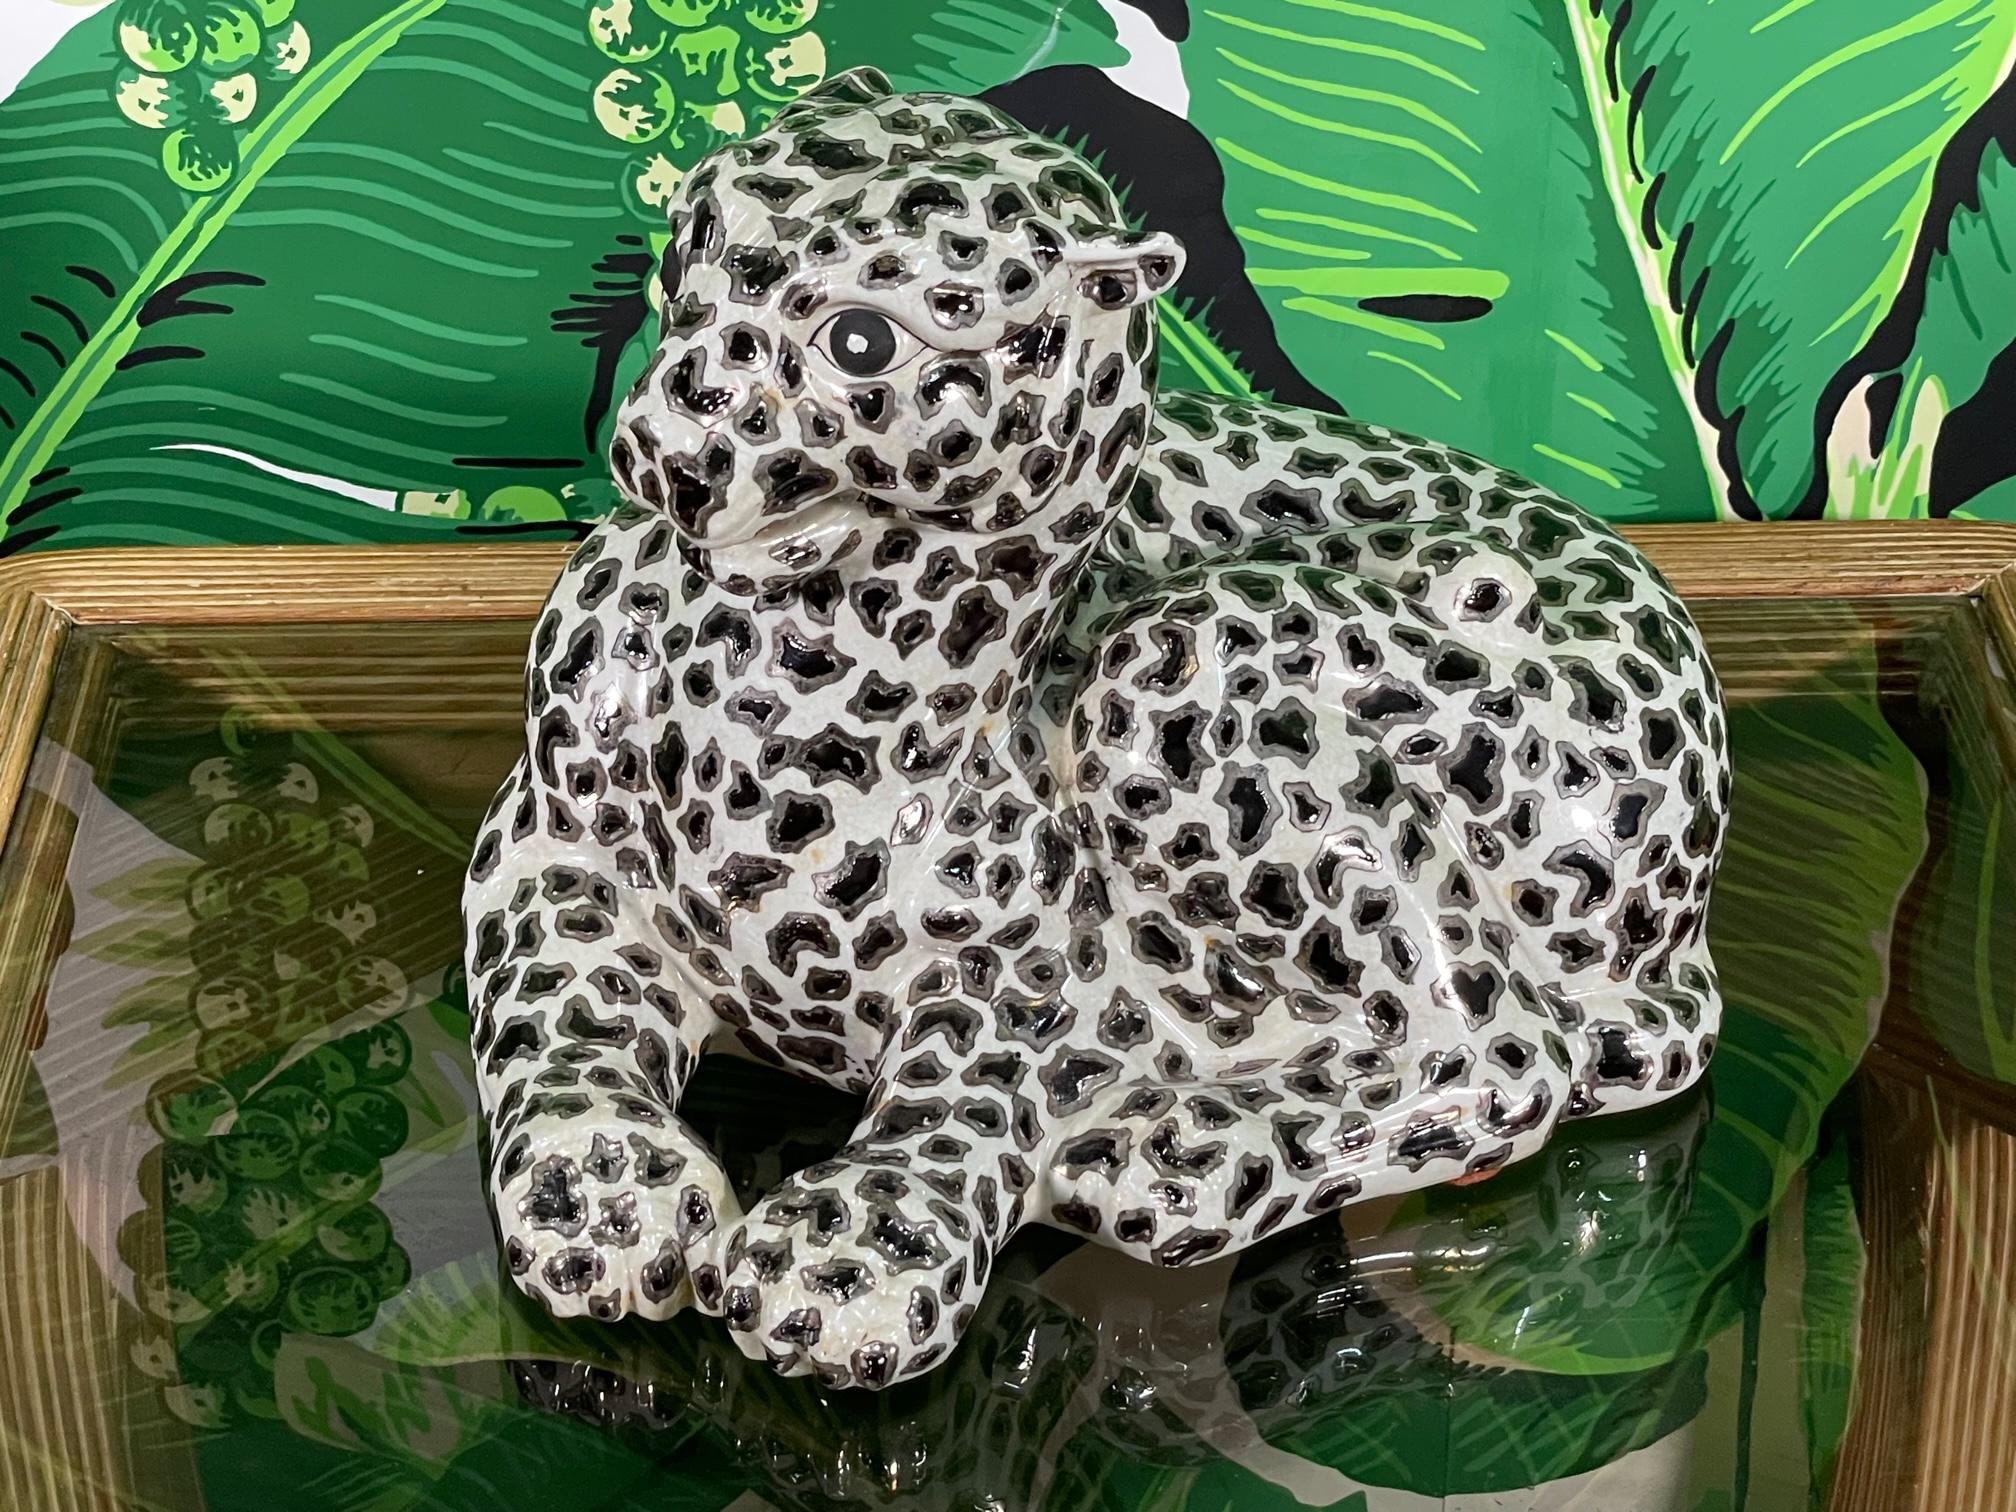 La figurine léopard de Pocelain présente des accents de feuilles d'argent et une finition glacée brillante. Marqué 